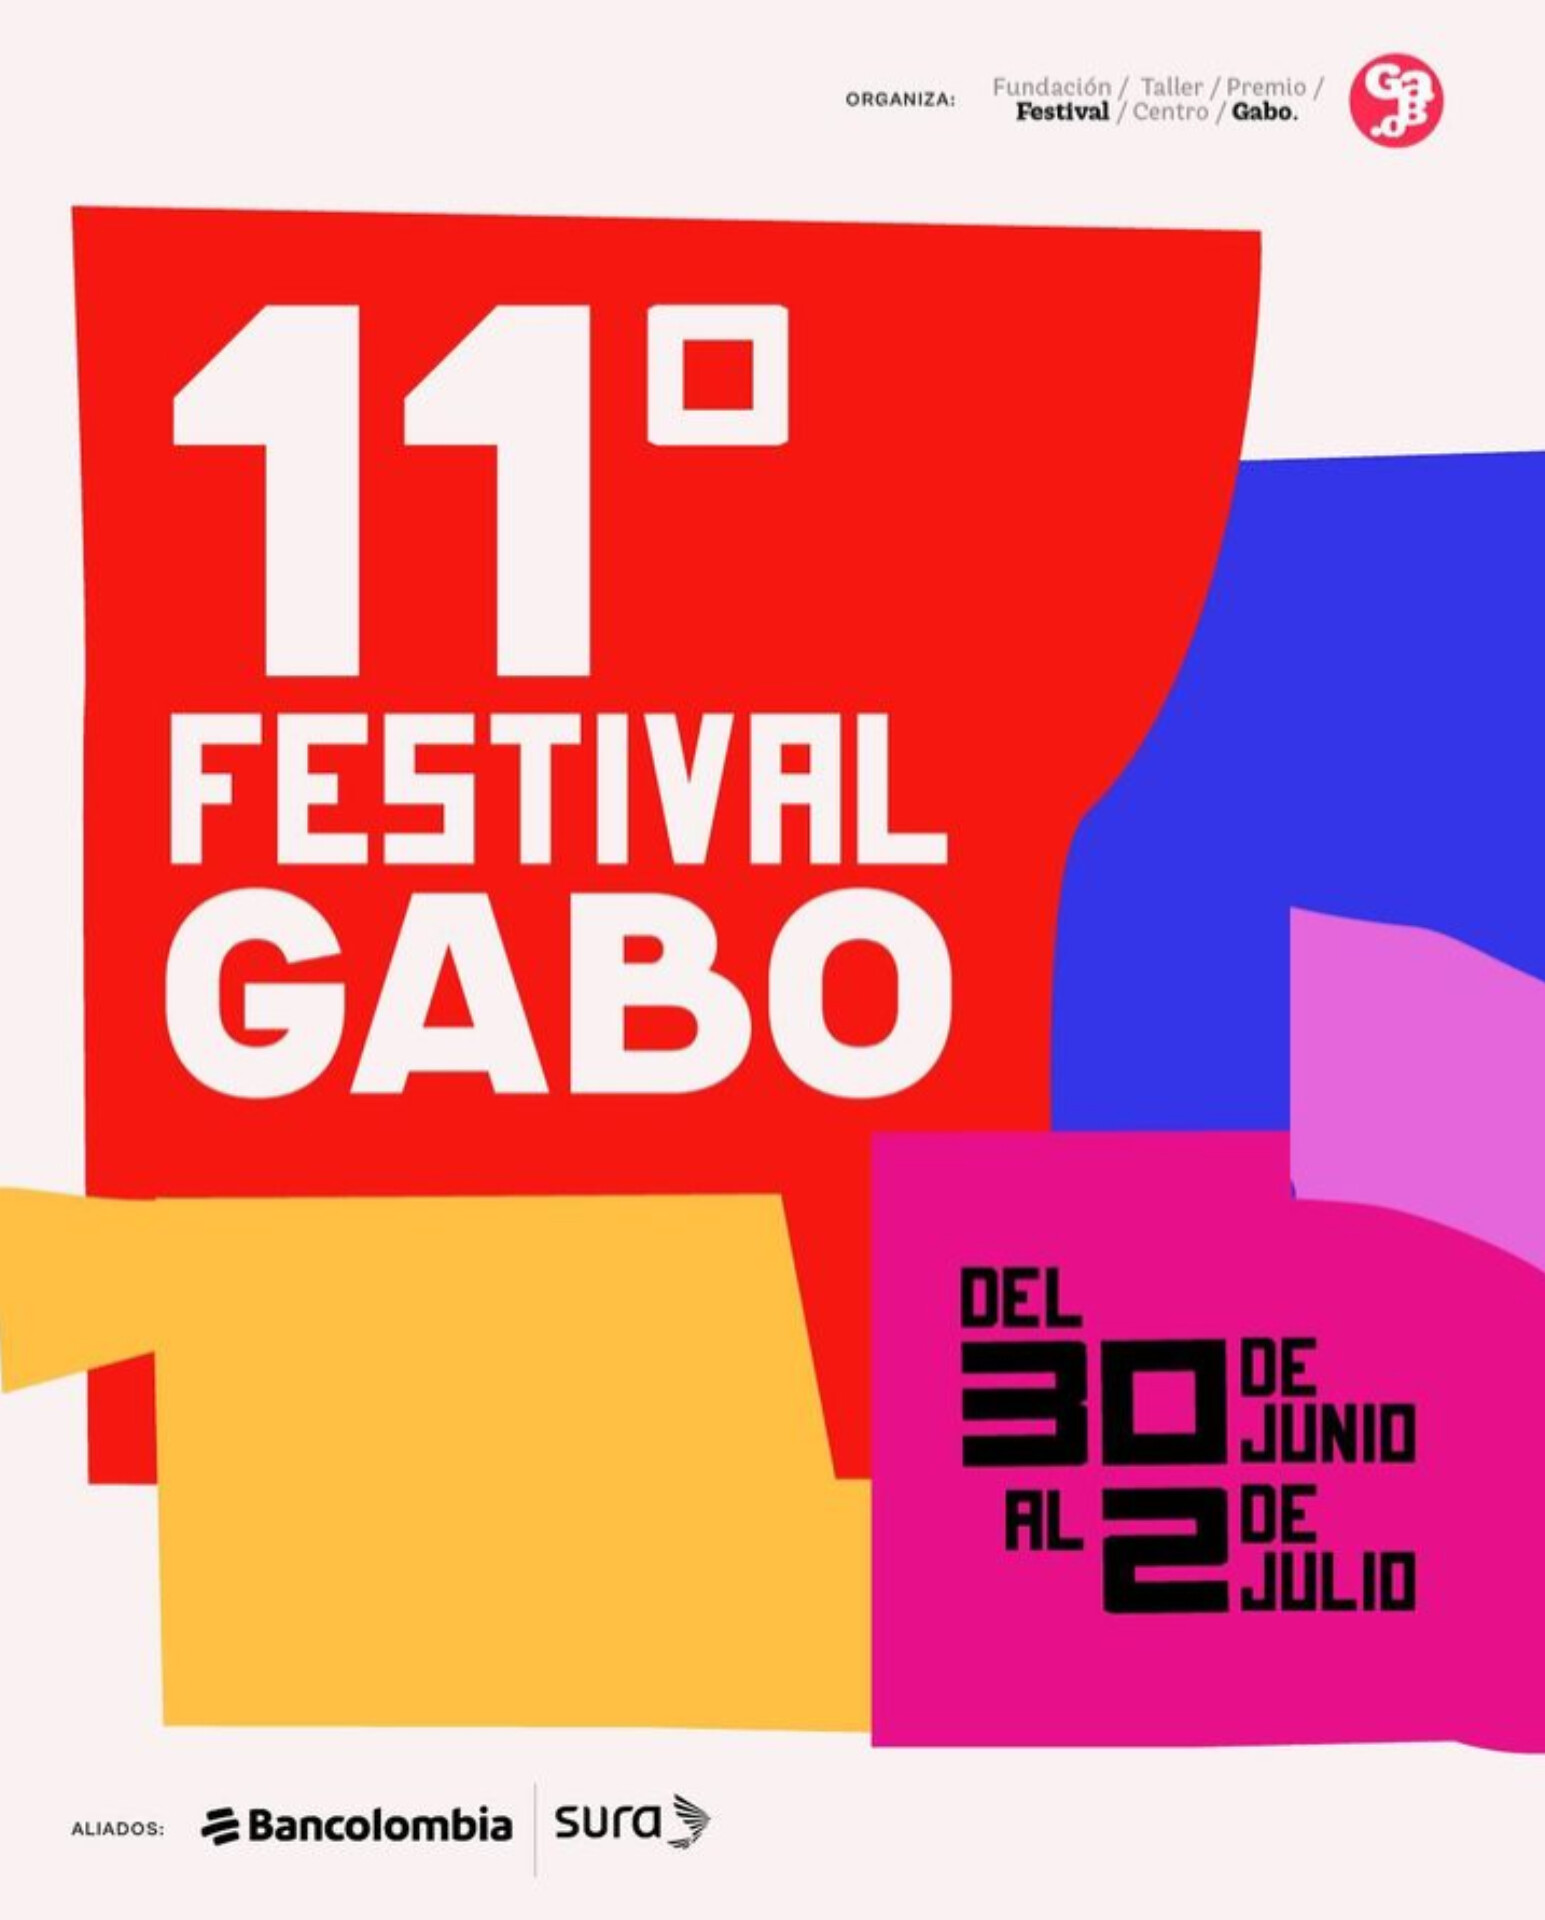 ¡La magia de contar historias!, Faltan pocos días para dar inicio al Festival Gabo